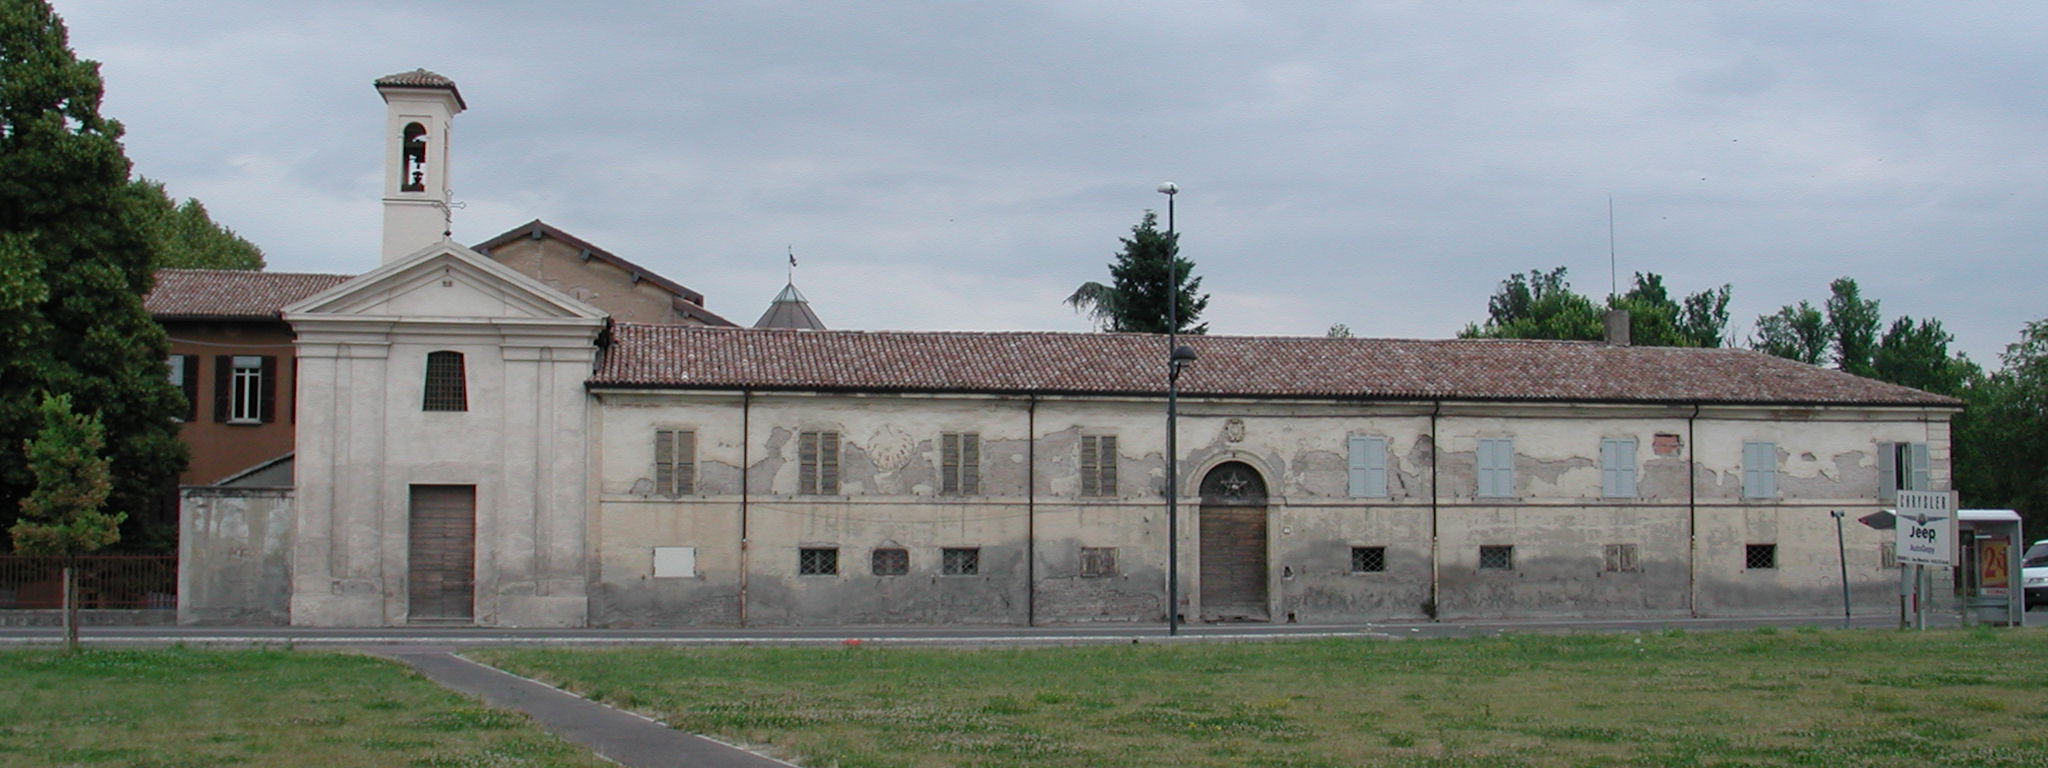 ex Ospizio di San Lazzaro (ospizio) - Reggio nell'Emilia (RE)  (sec. XVIII, seconda metà)